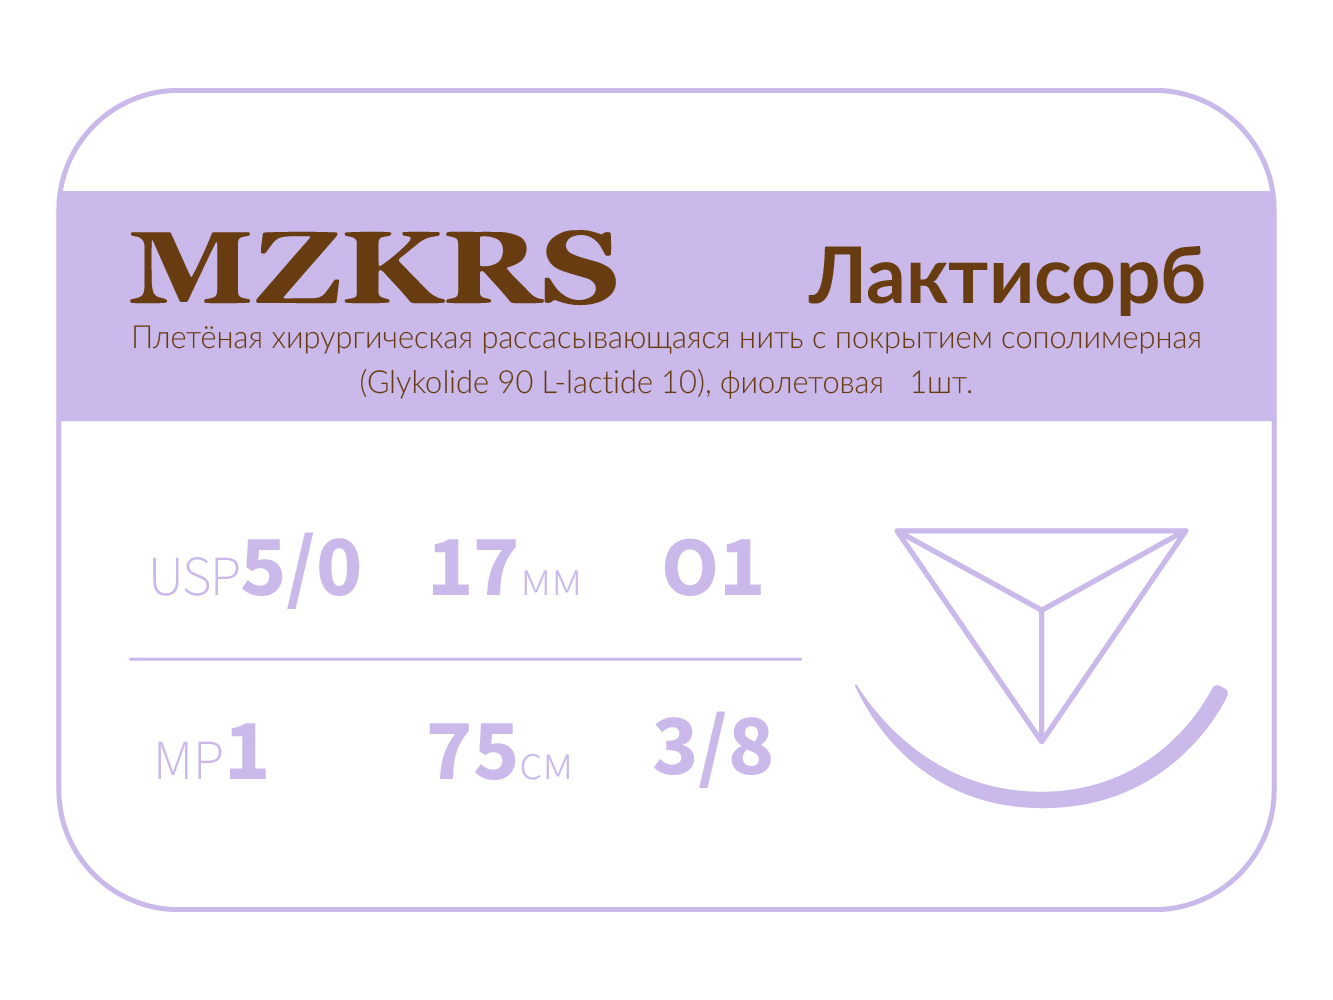 1738О1 Premium-5/0 (1)75 ПГЛ ЛАКТИСОРБ хирургическая нить сополимерная, обратно-режущая игла, MZKRS (Россия)